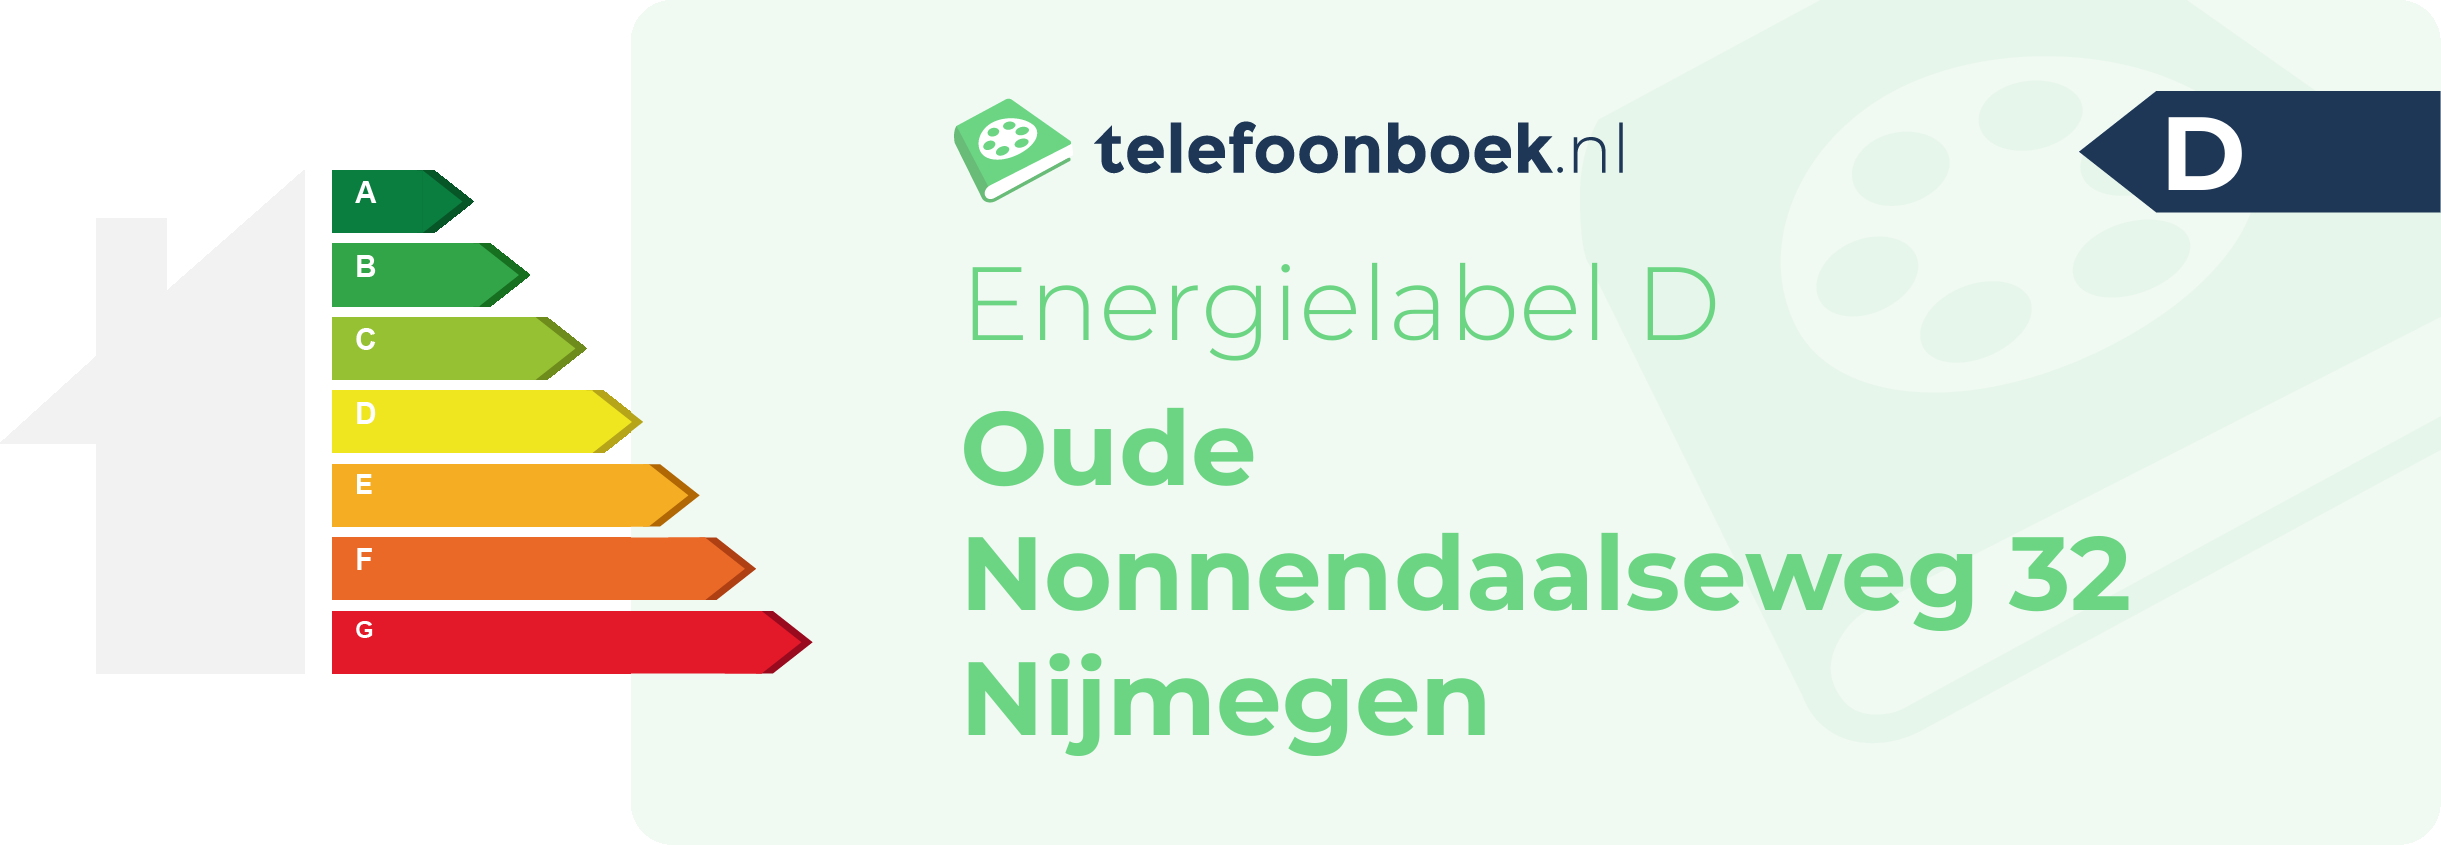 Energielabel Oude Nonnendaalseweg 32 Nijmegen